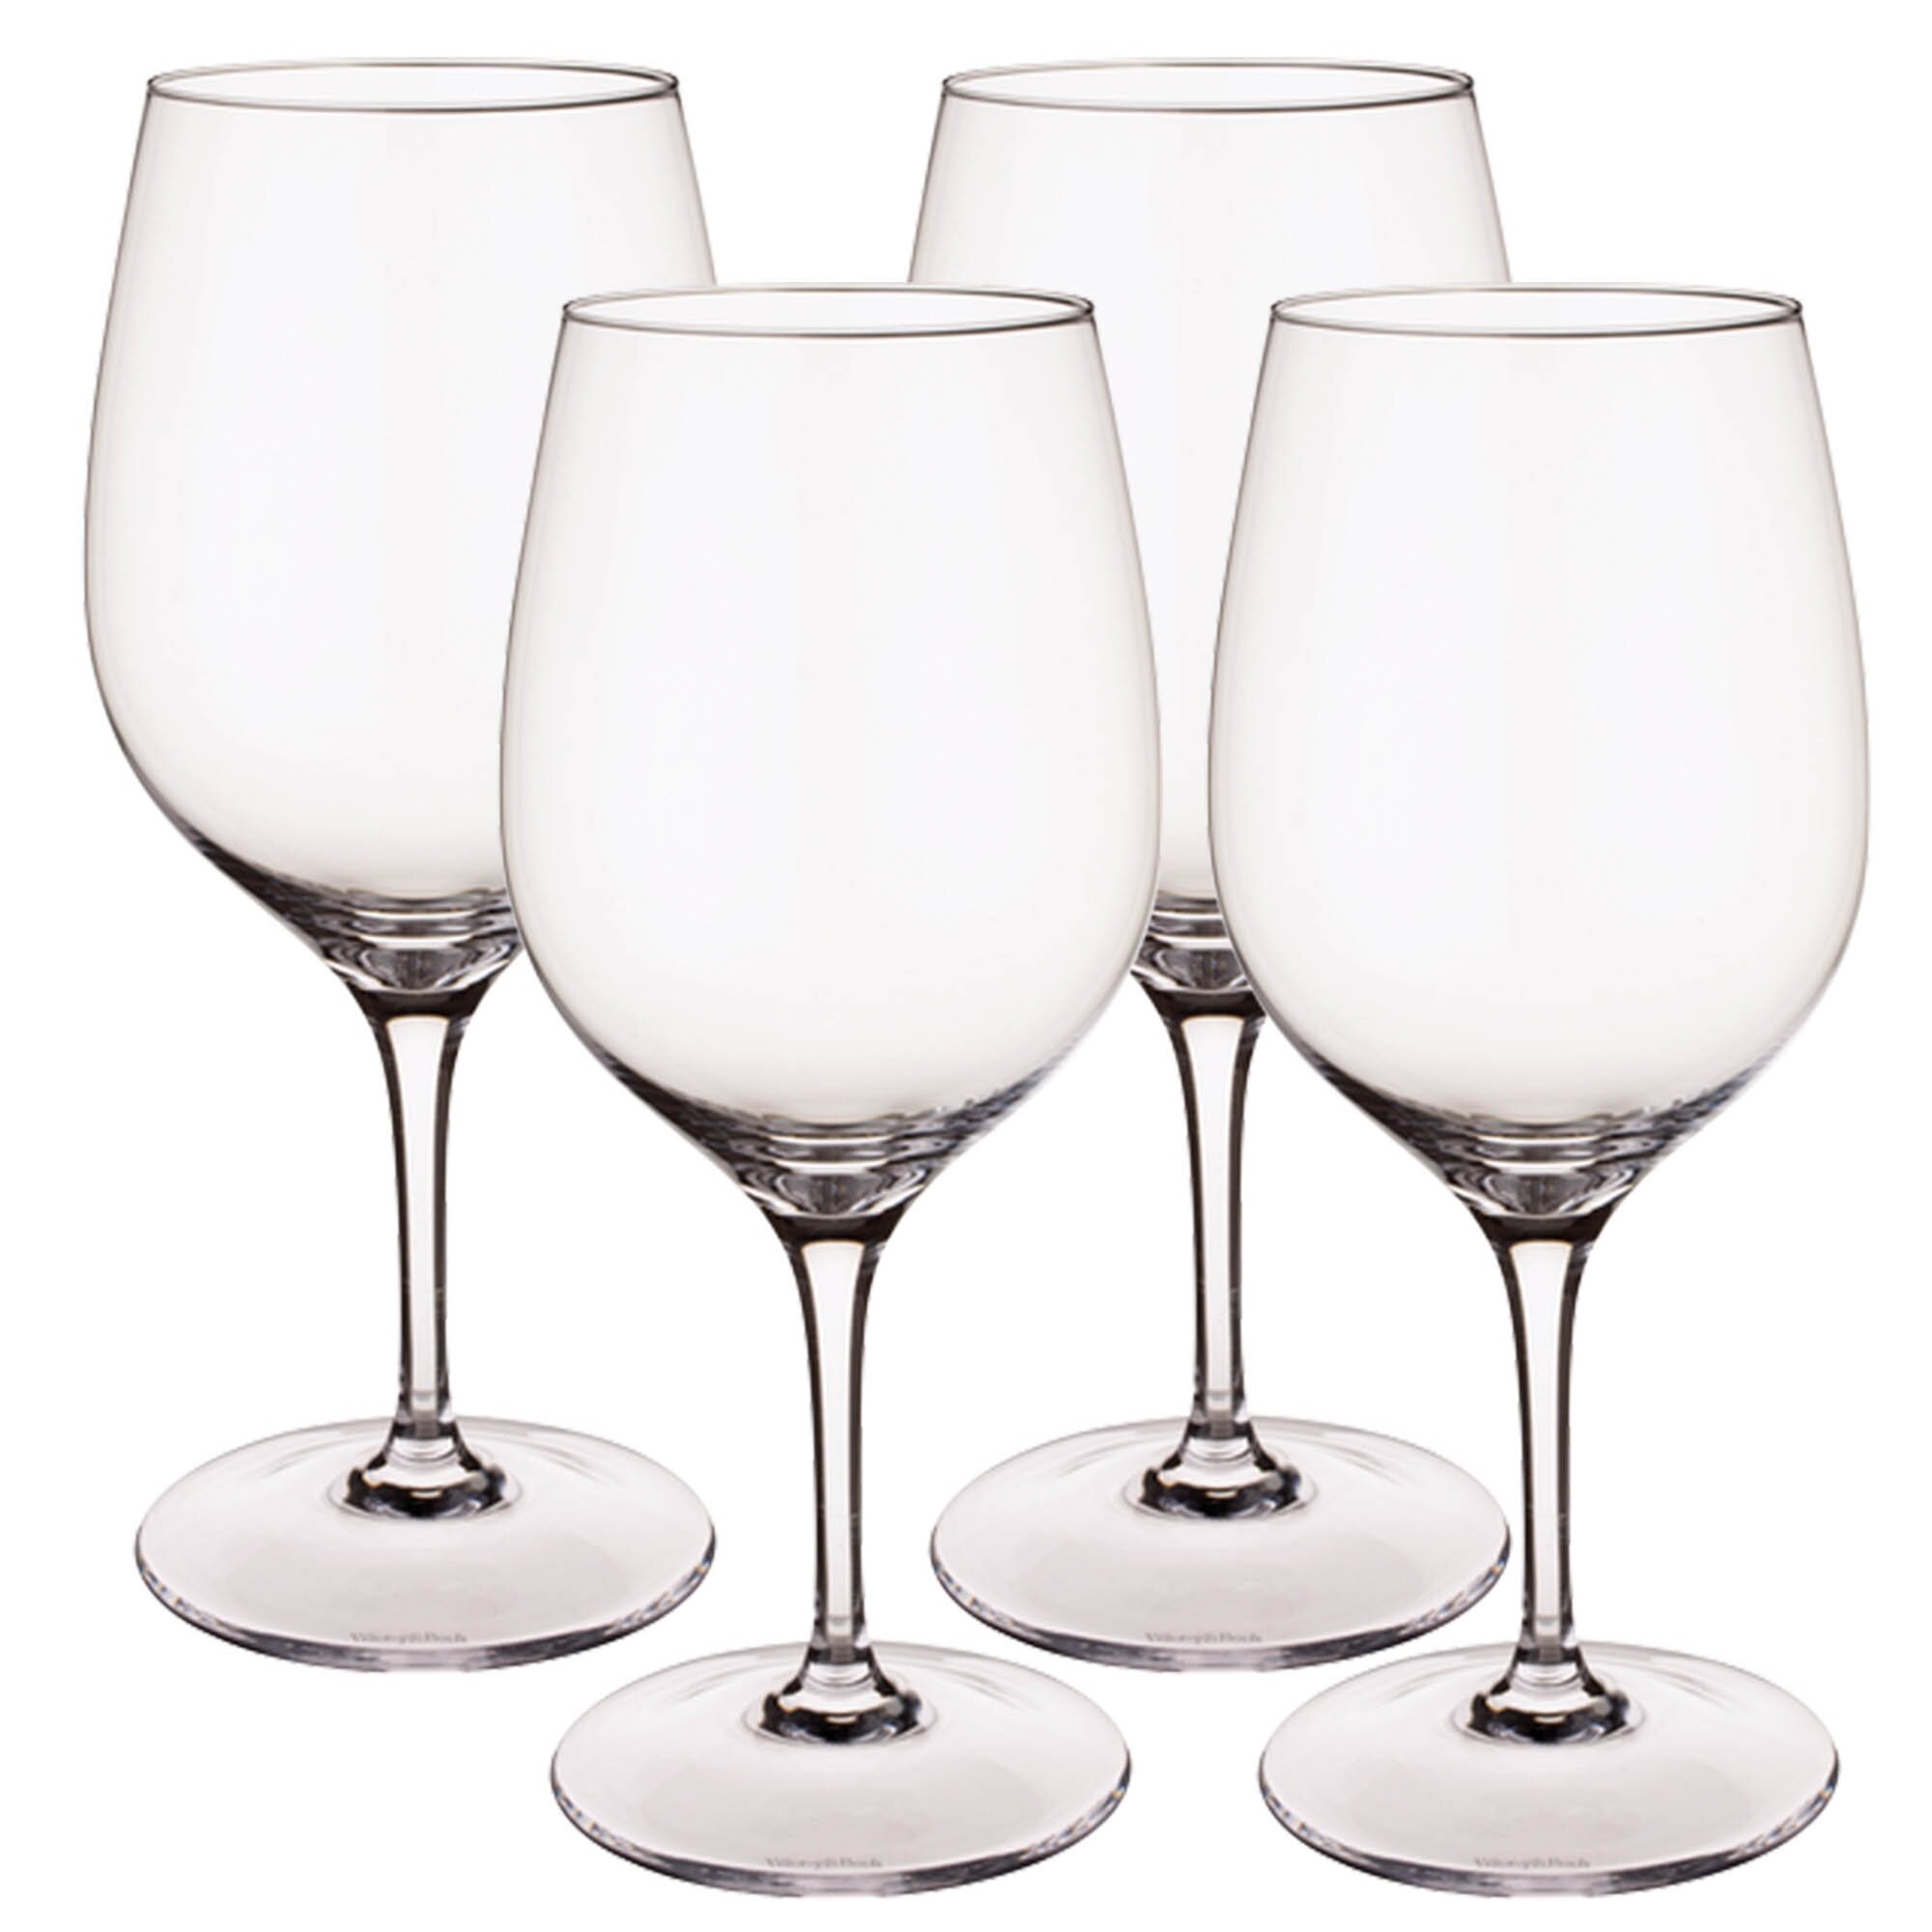 https://assets.wfcdn.com/im/34787452/compr-r85/1150/115025857/entree-set4-16-oz-crystal-red-wine-stemmed-wine-glasses.jpg